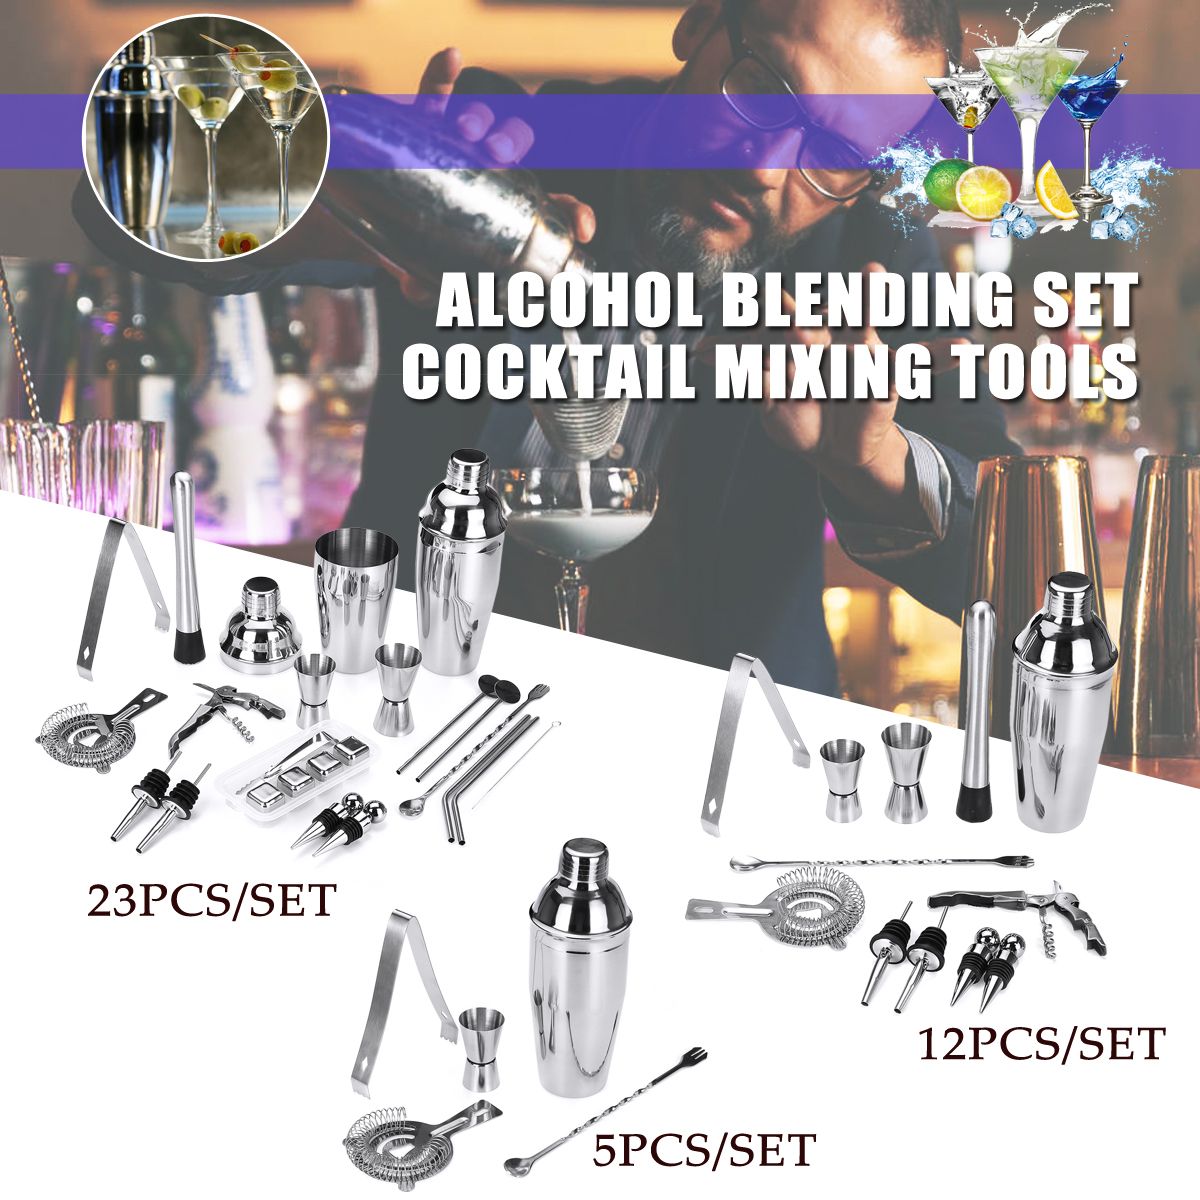 22PCS-Cocktail-Xixing-Tool-Alcohol-Blending-Set-Cocktail-Mixing-Tools-Cocktail-Shaker--Cocktail-Set-1587205